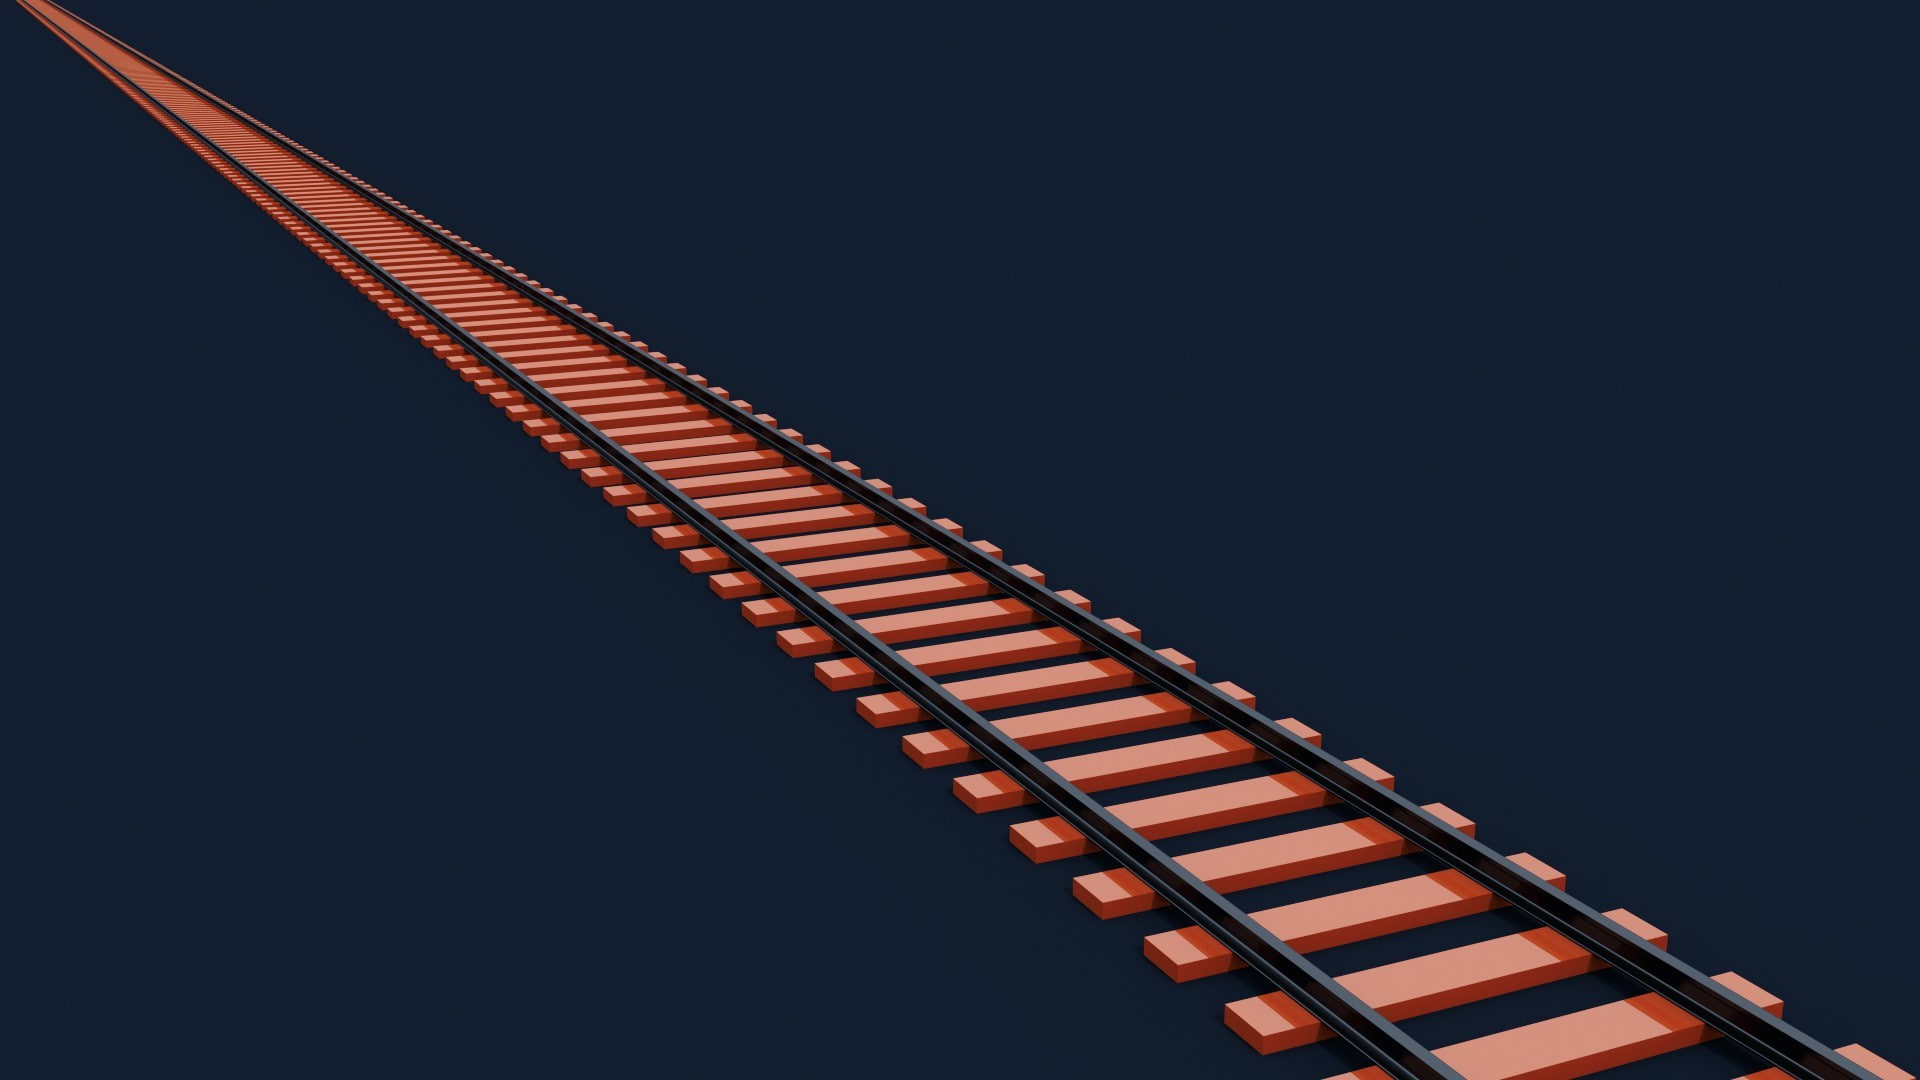 railway train abstract orange render cgi blender modern simple minimalism 3d digital art simple background